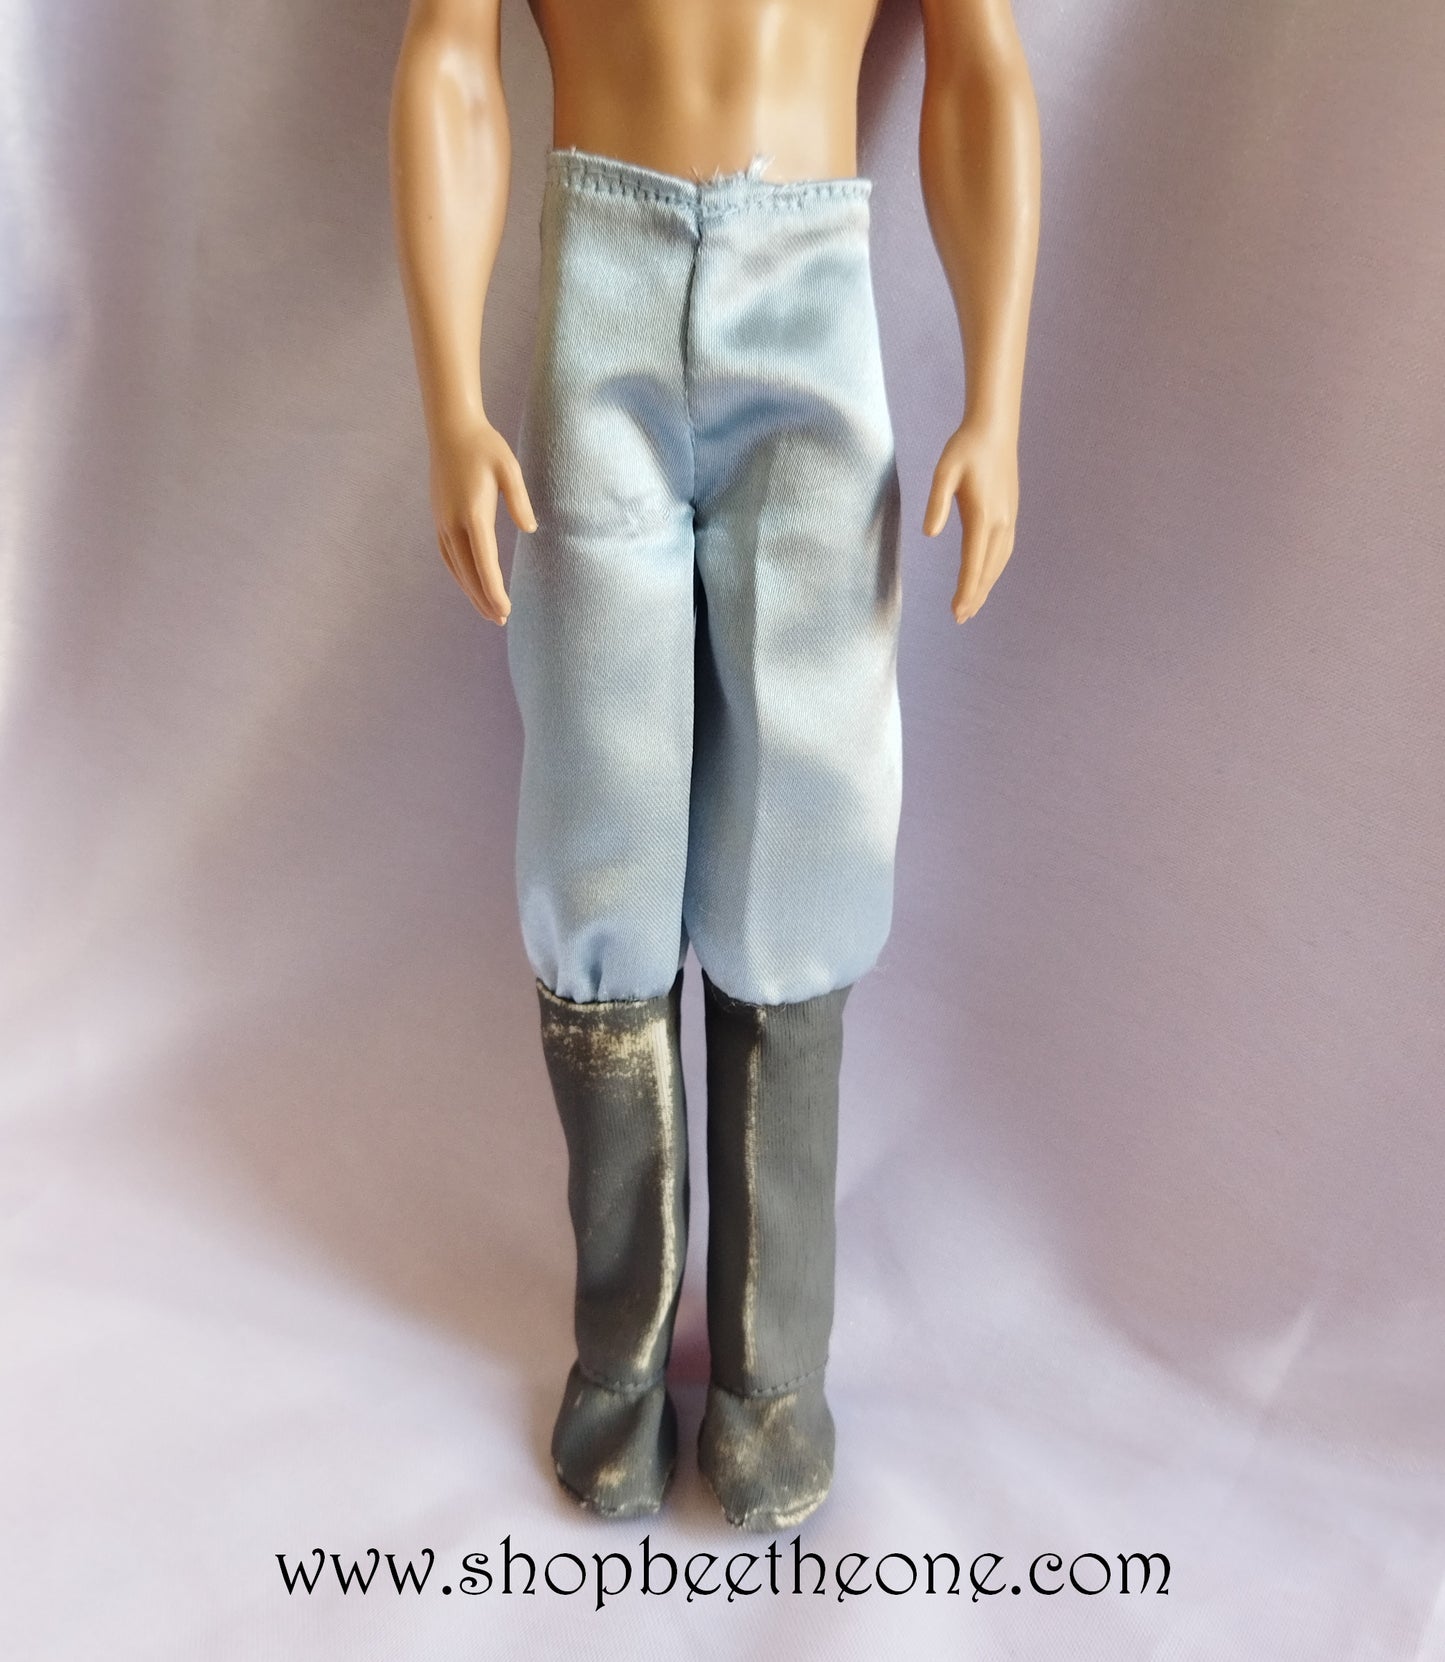 Barbie Collection Princesses - Prince Ken - Mattel 2004 - Exclusivité Europe - Vêtement